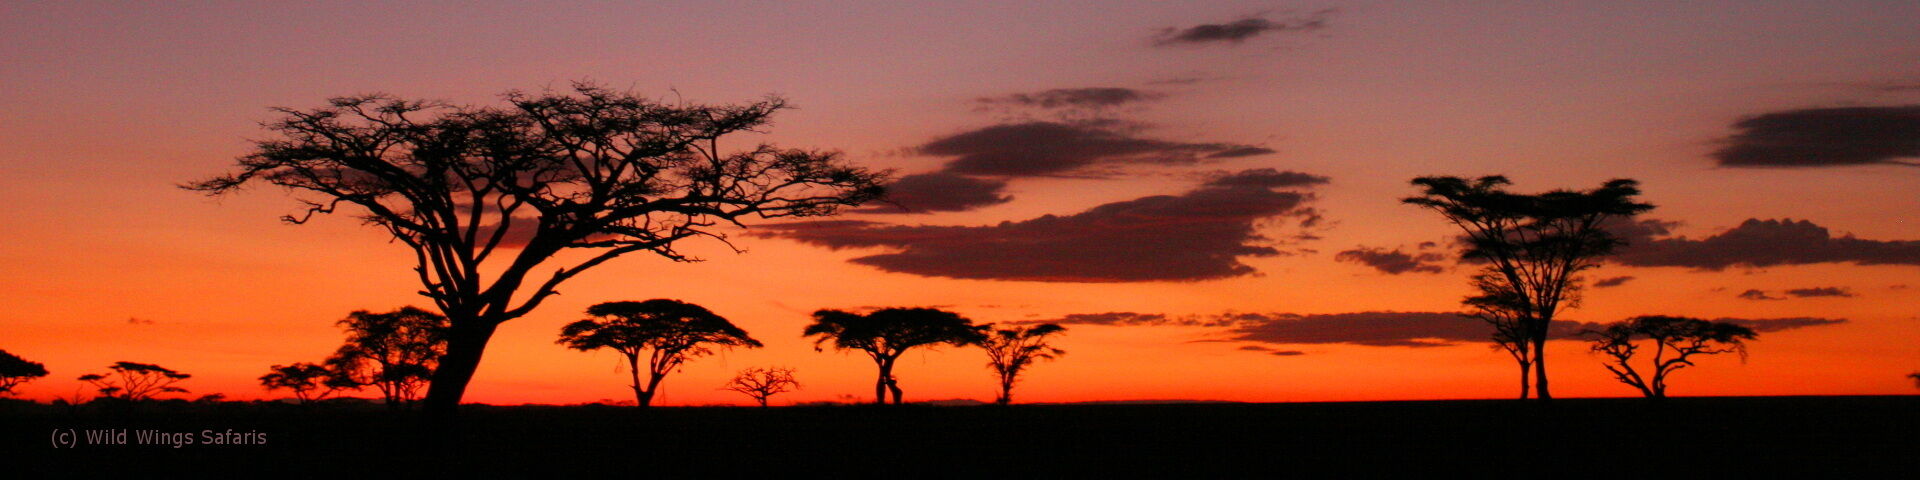 7 Day Tanzania Safari